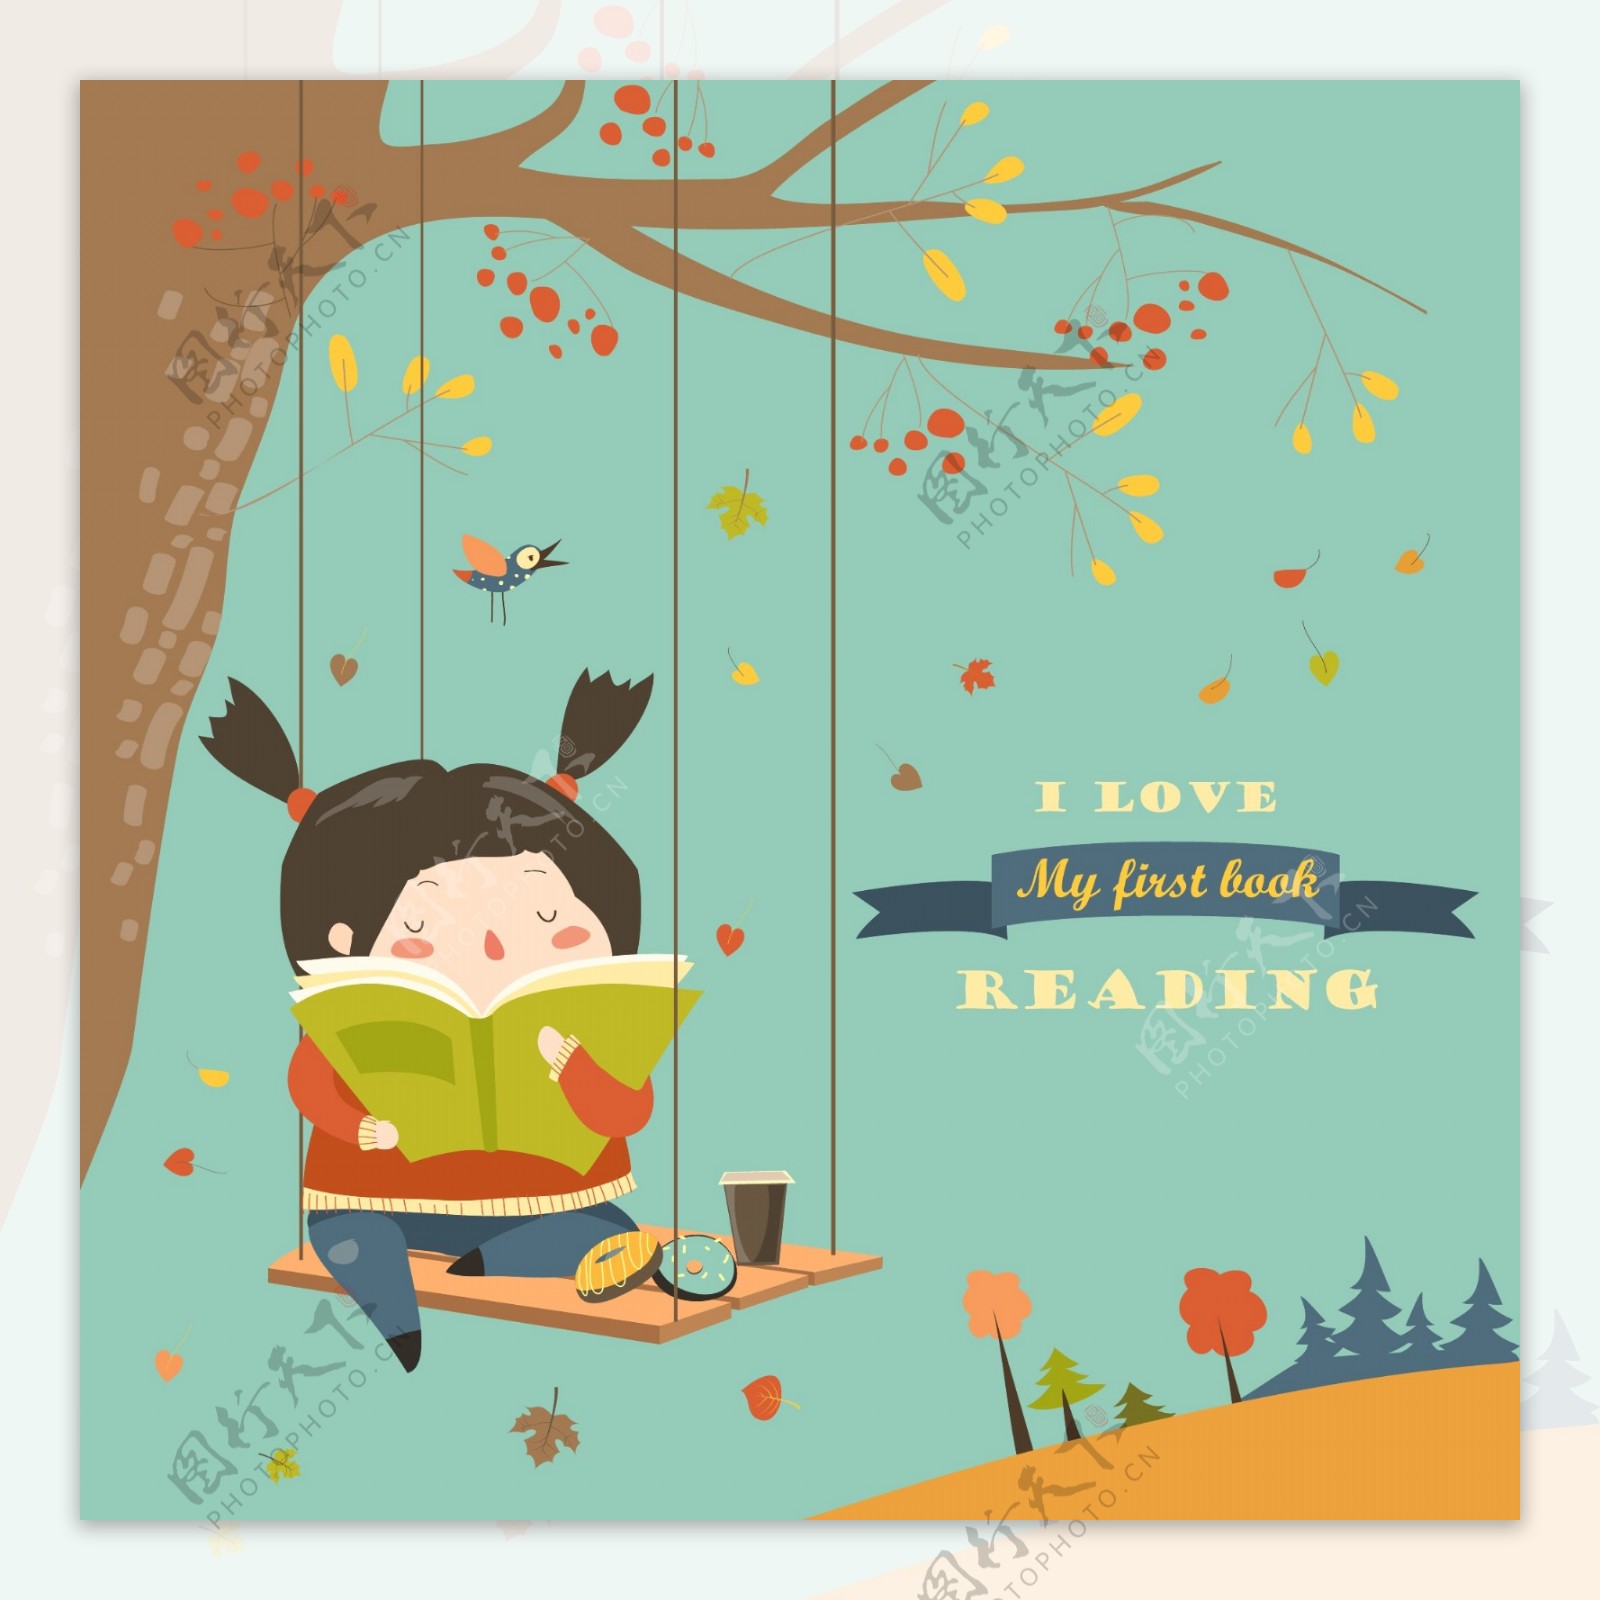 坐在秋千上读书的女孩